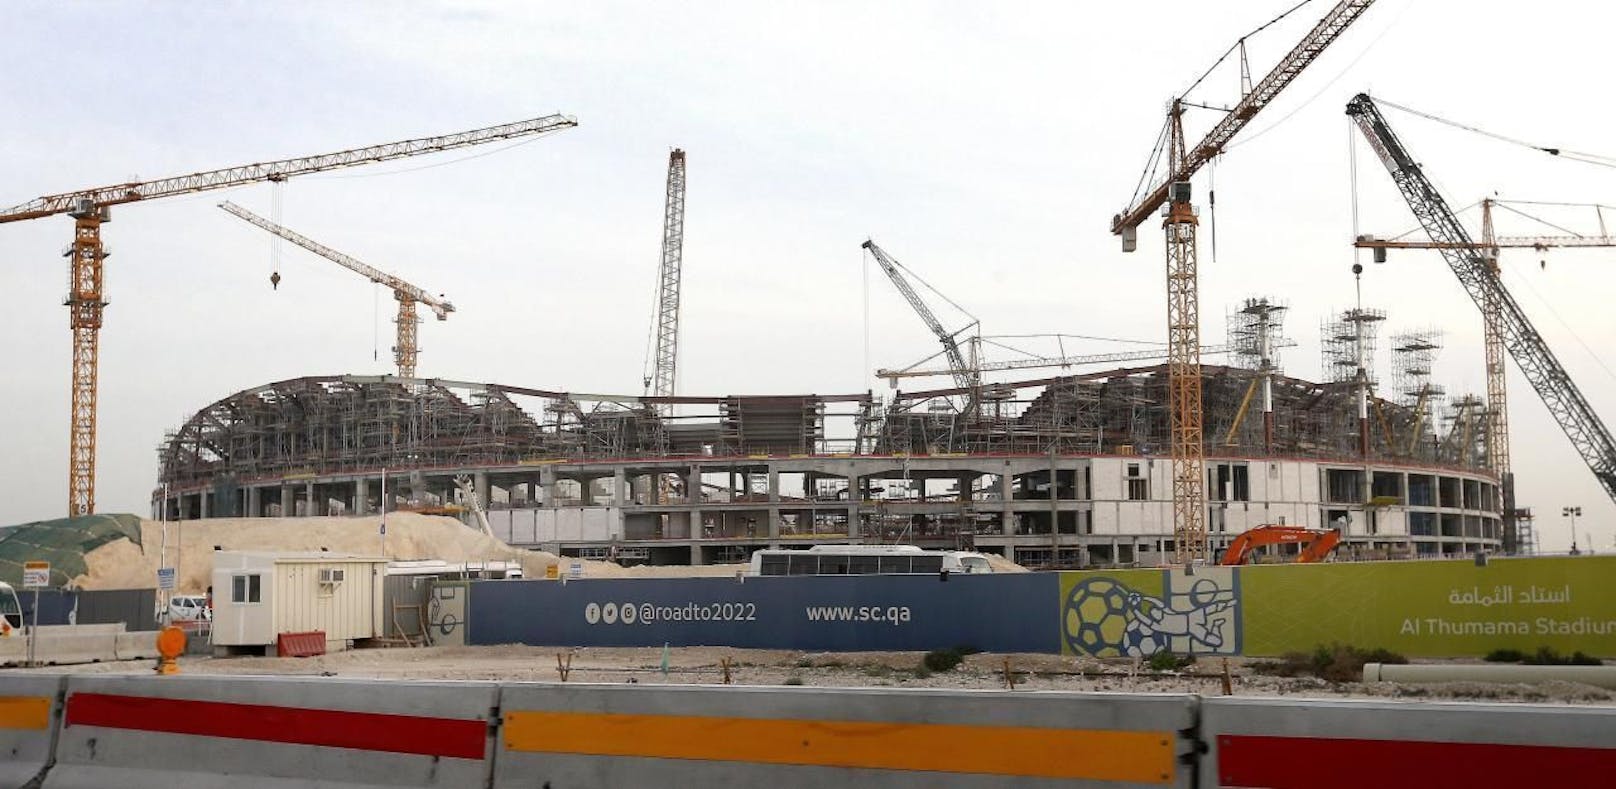 Eine der Baustellen für die Fußball-WM 2022 in Katar.